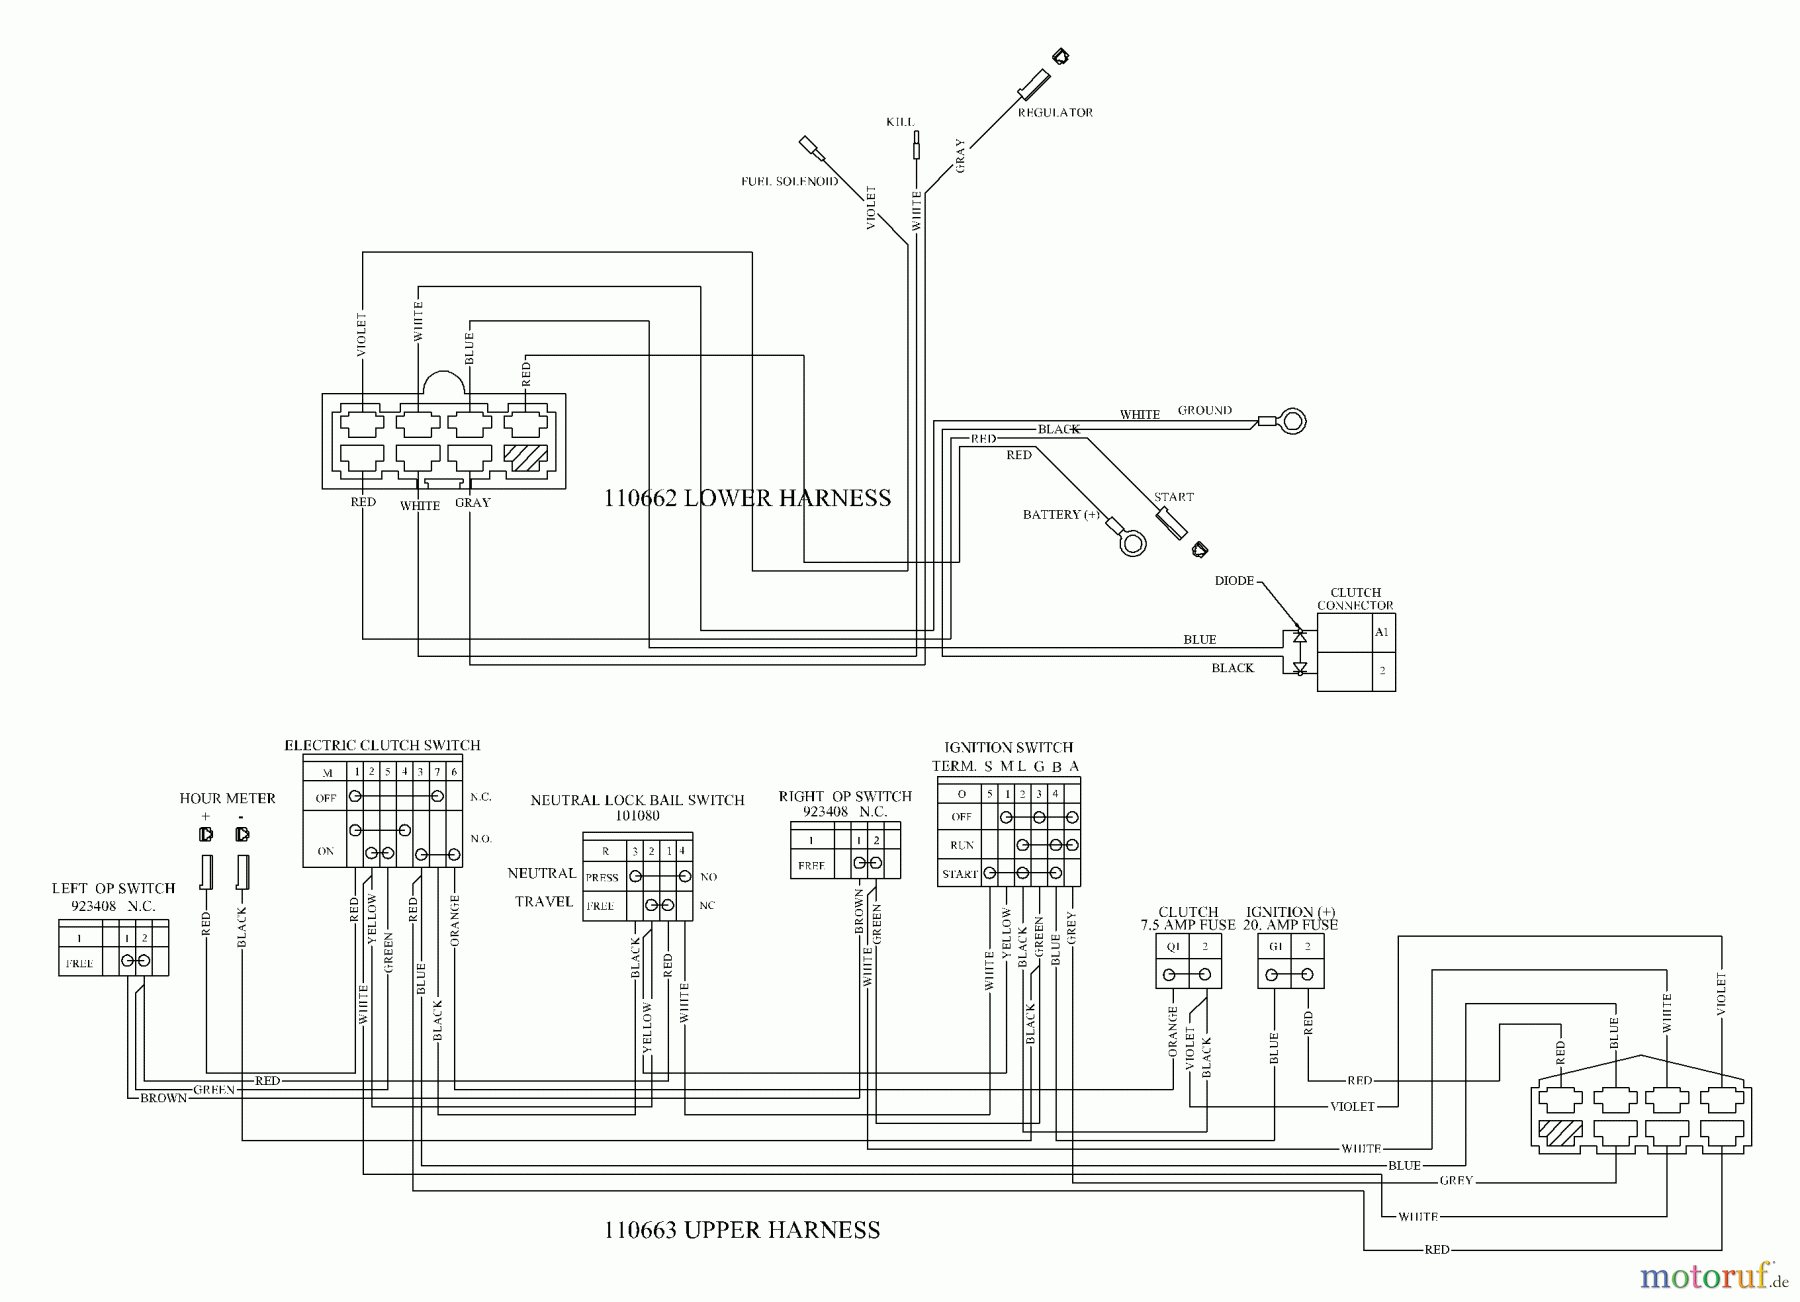  Husqvarna Rasenmäher für Großflächen WH 4817EFQ (968999252) - Husqvarna Wide-Area Walk-Behind Mower (2005-08 to 2006-11) Wiring Schematic